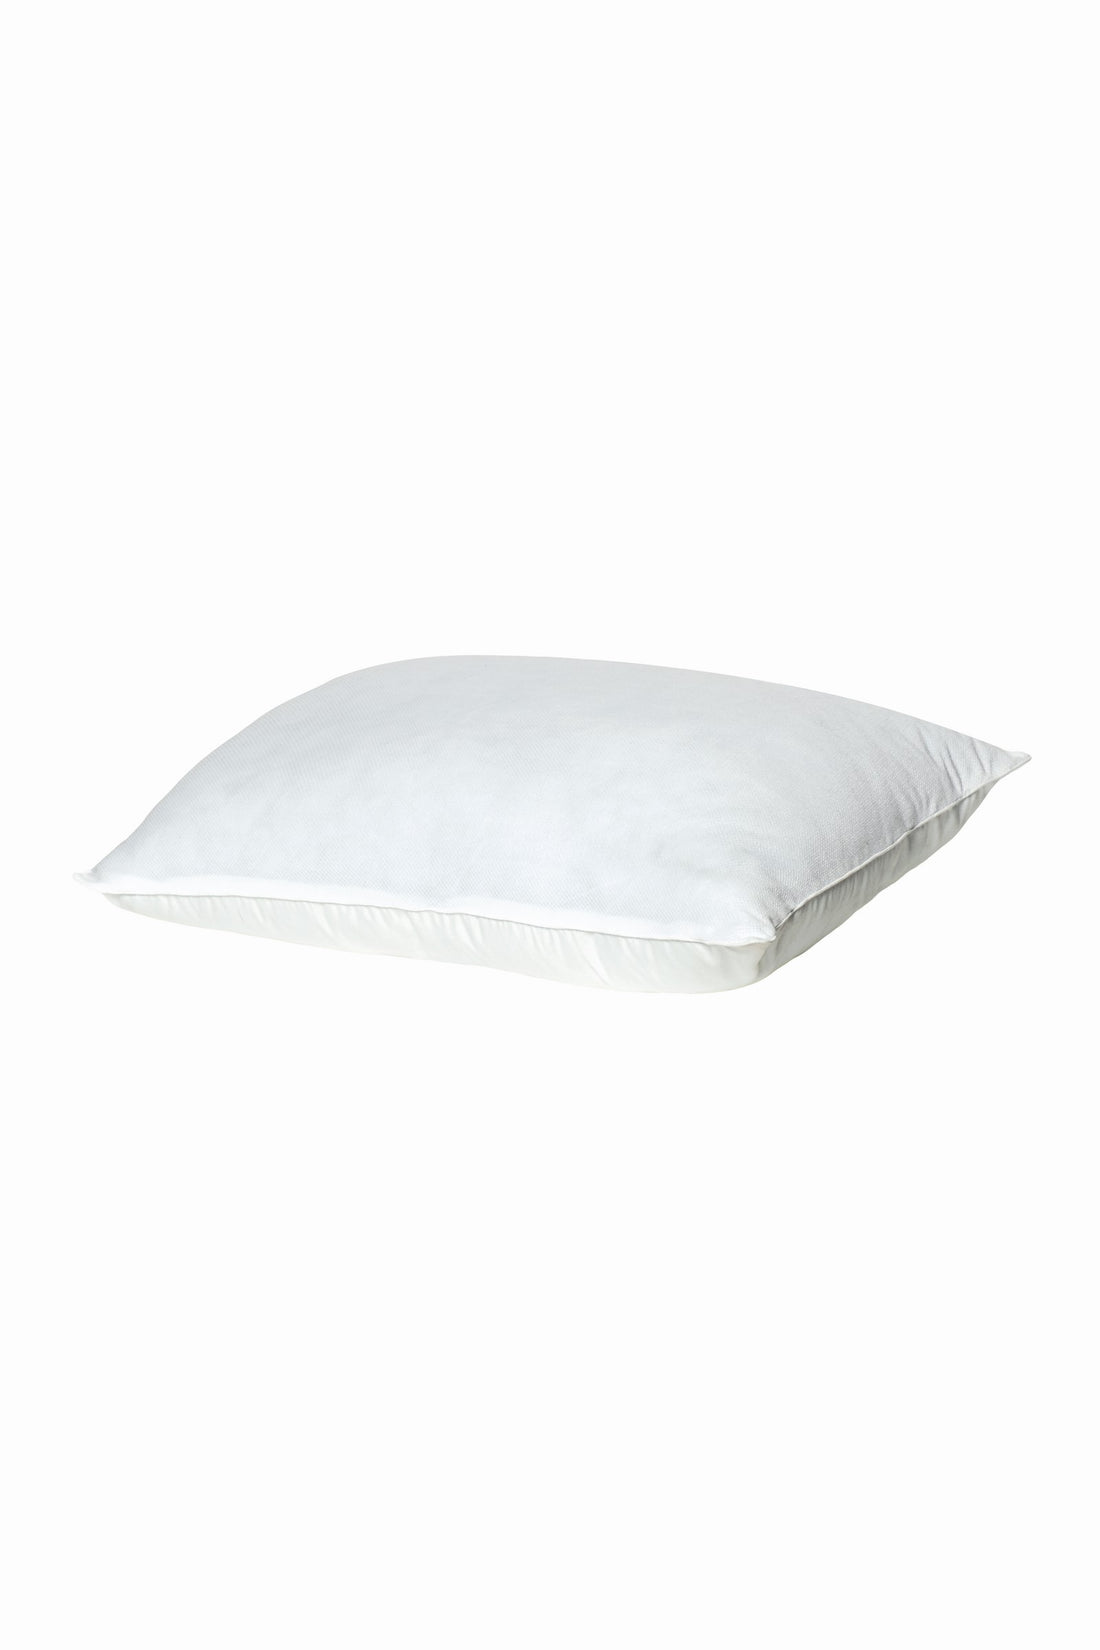 Cotton Box Utka Pillow White 50x70